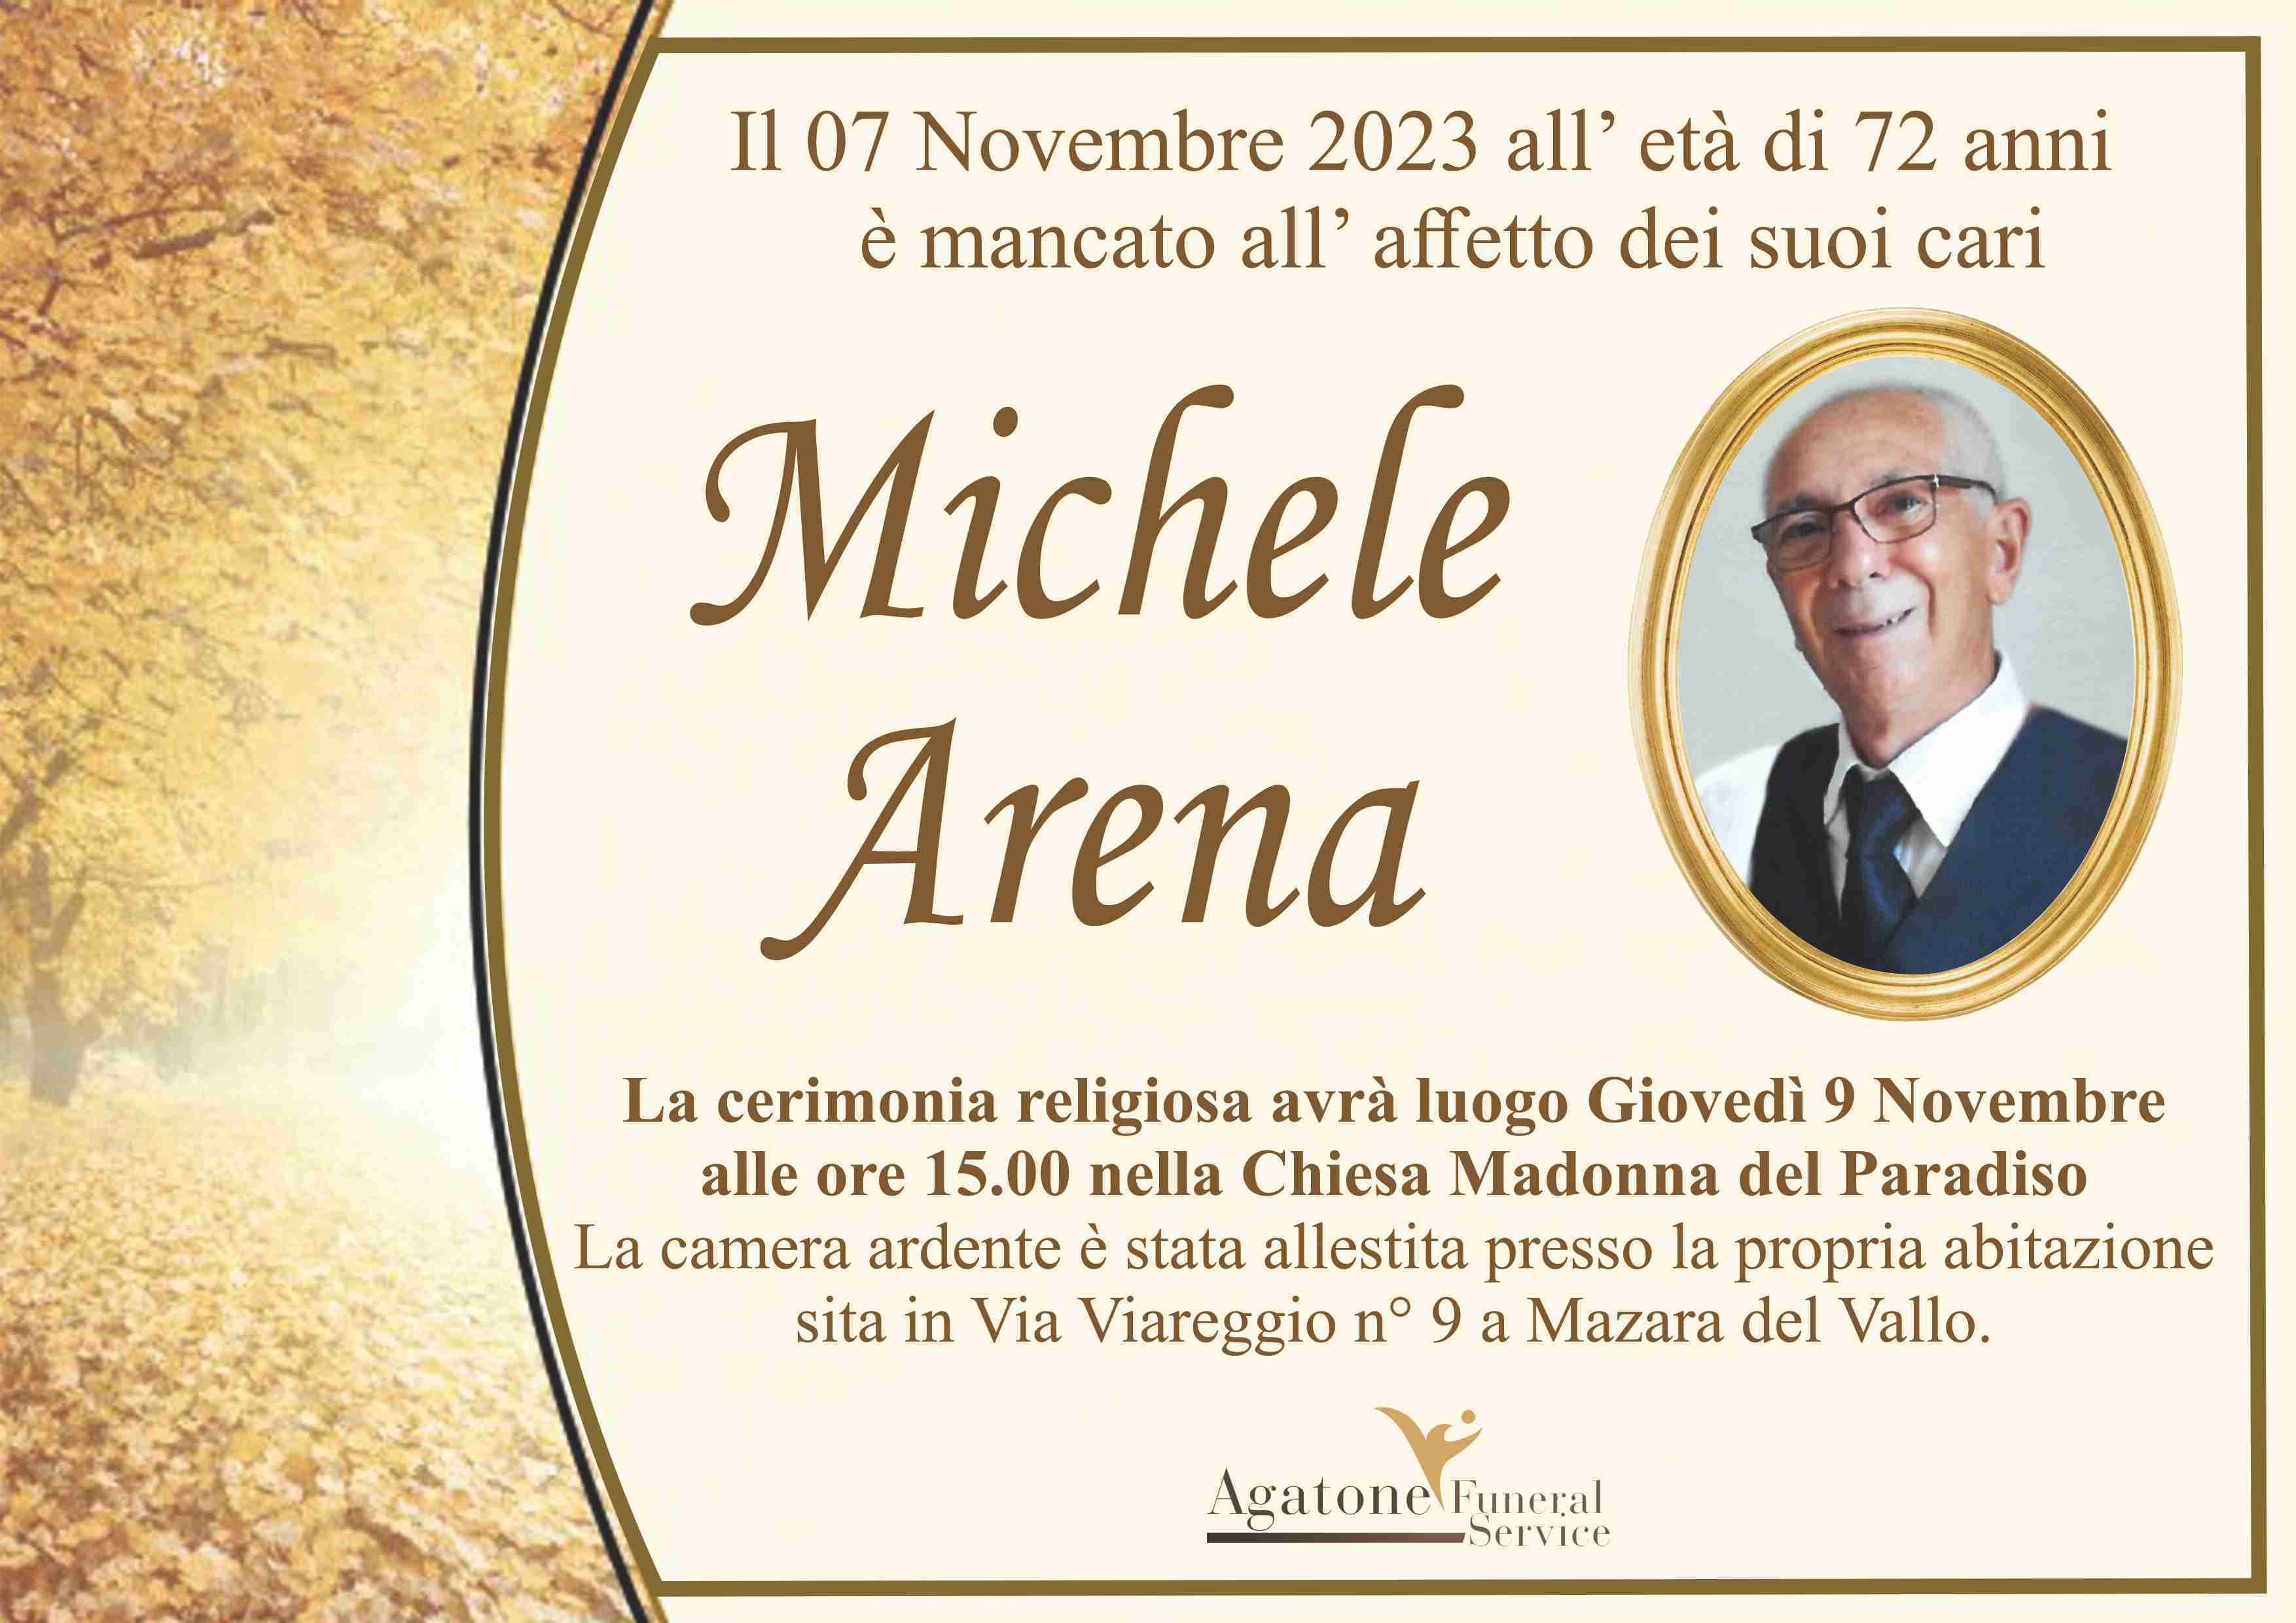 Michele Arena